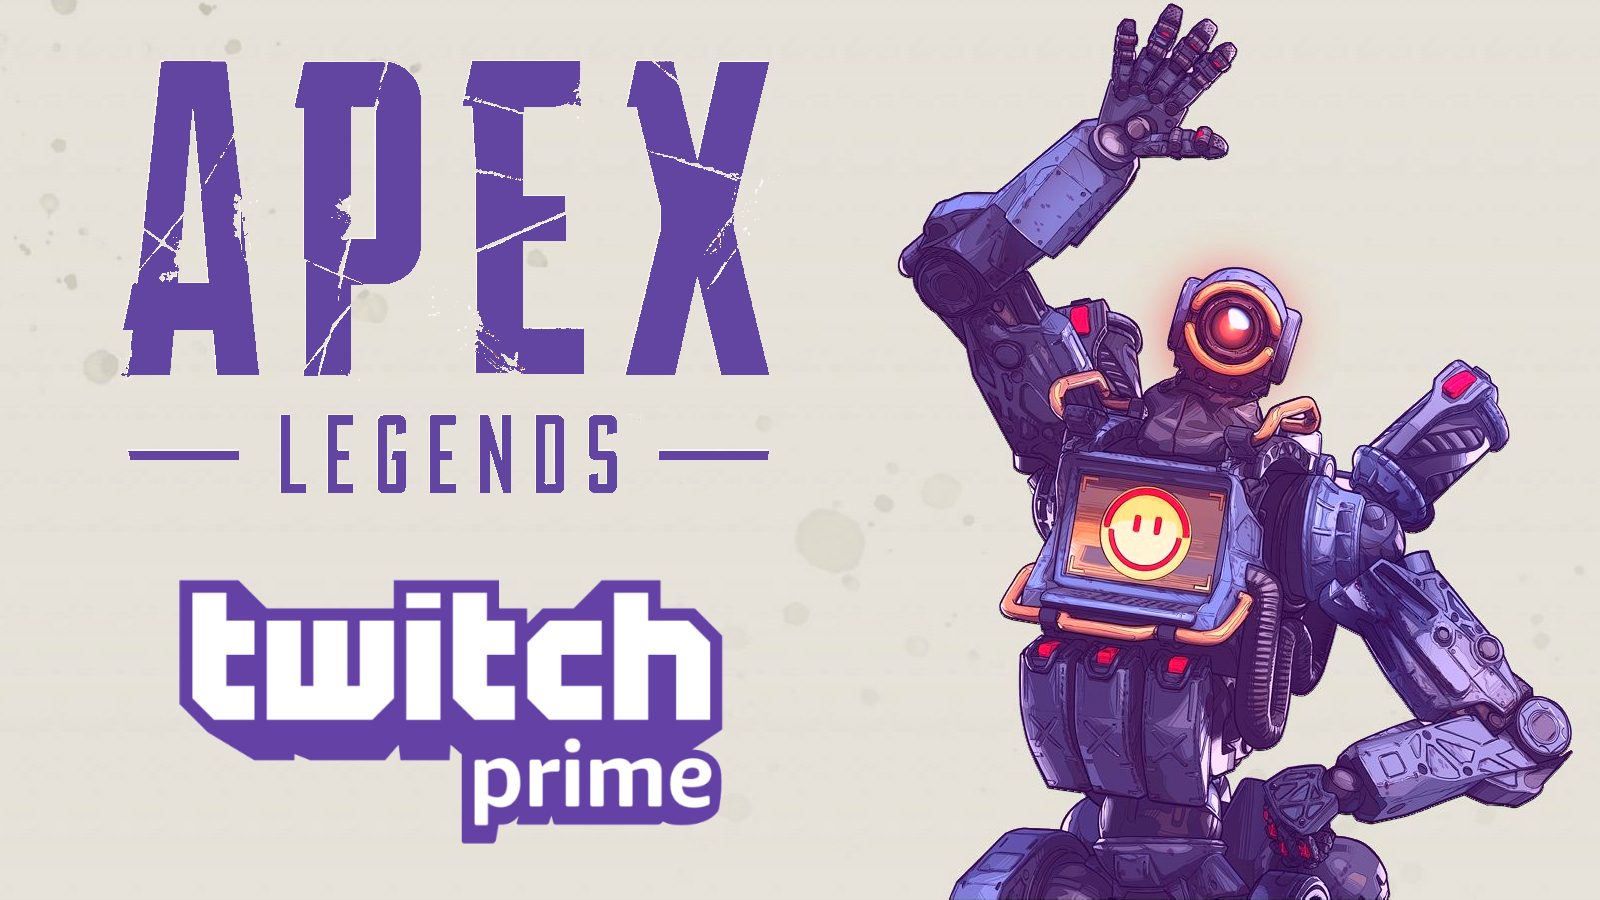 Avaa Apex Legends Twitch Prime Loot ilmaiseksi käyttämällä tätä käynnistyskomentoa